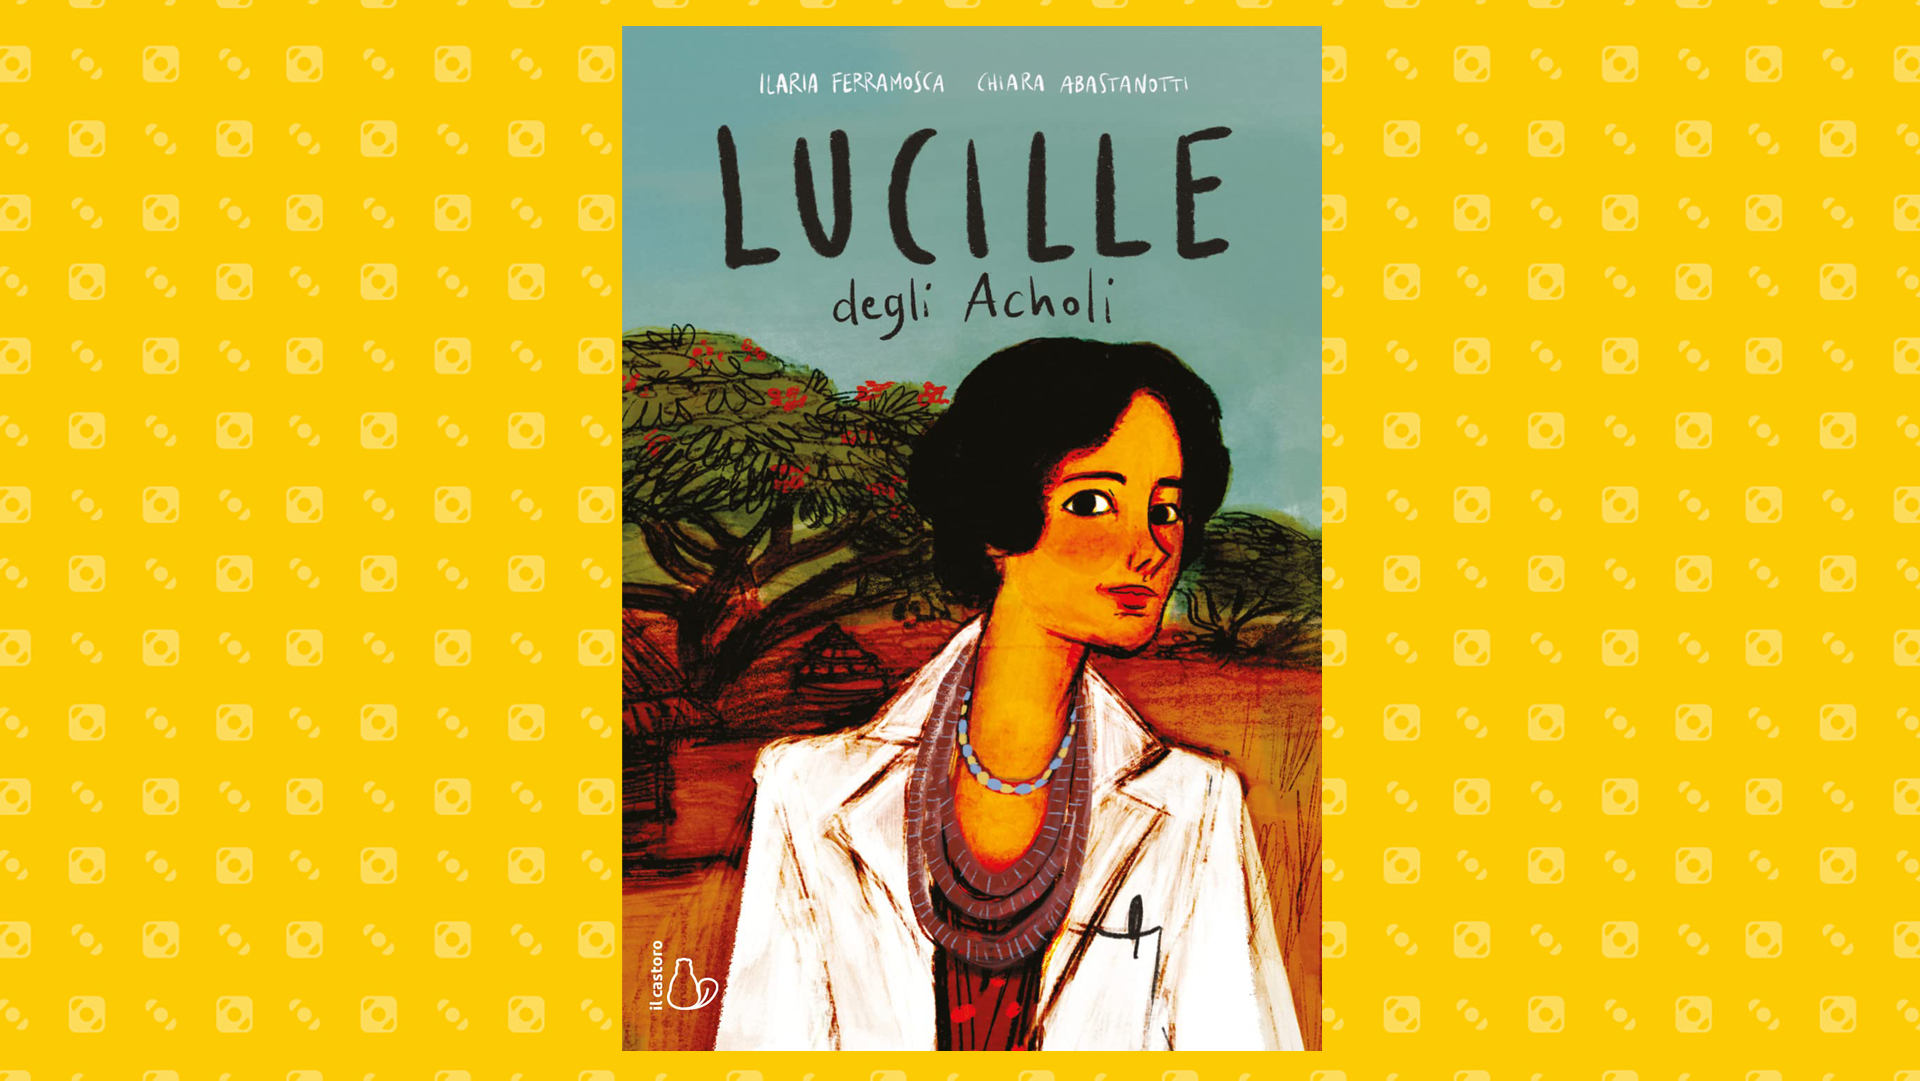 Il racconto a fumetti della vita straordinaria di Lucille Teasdale